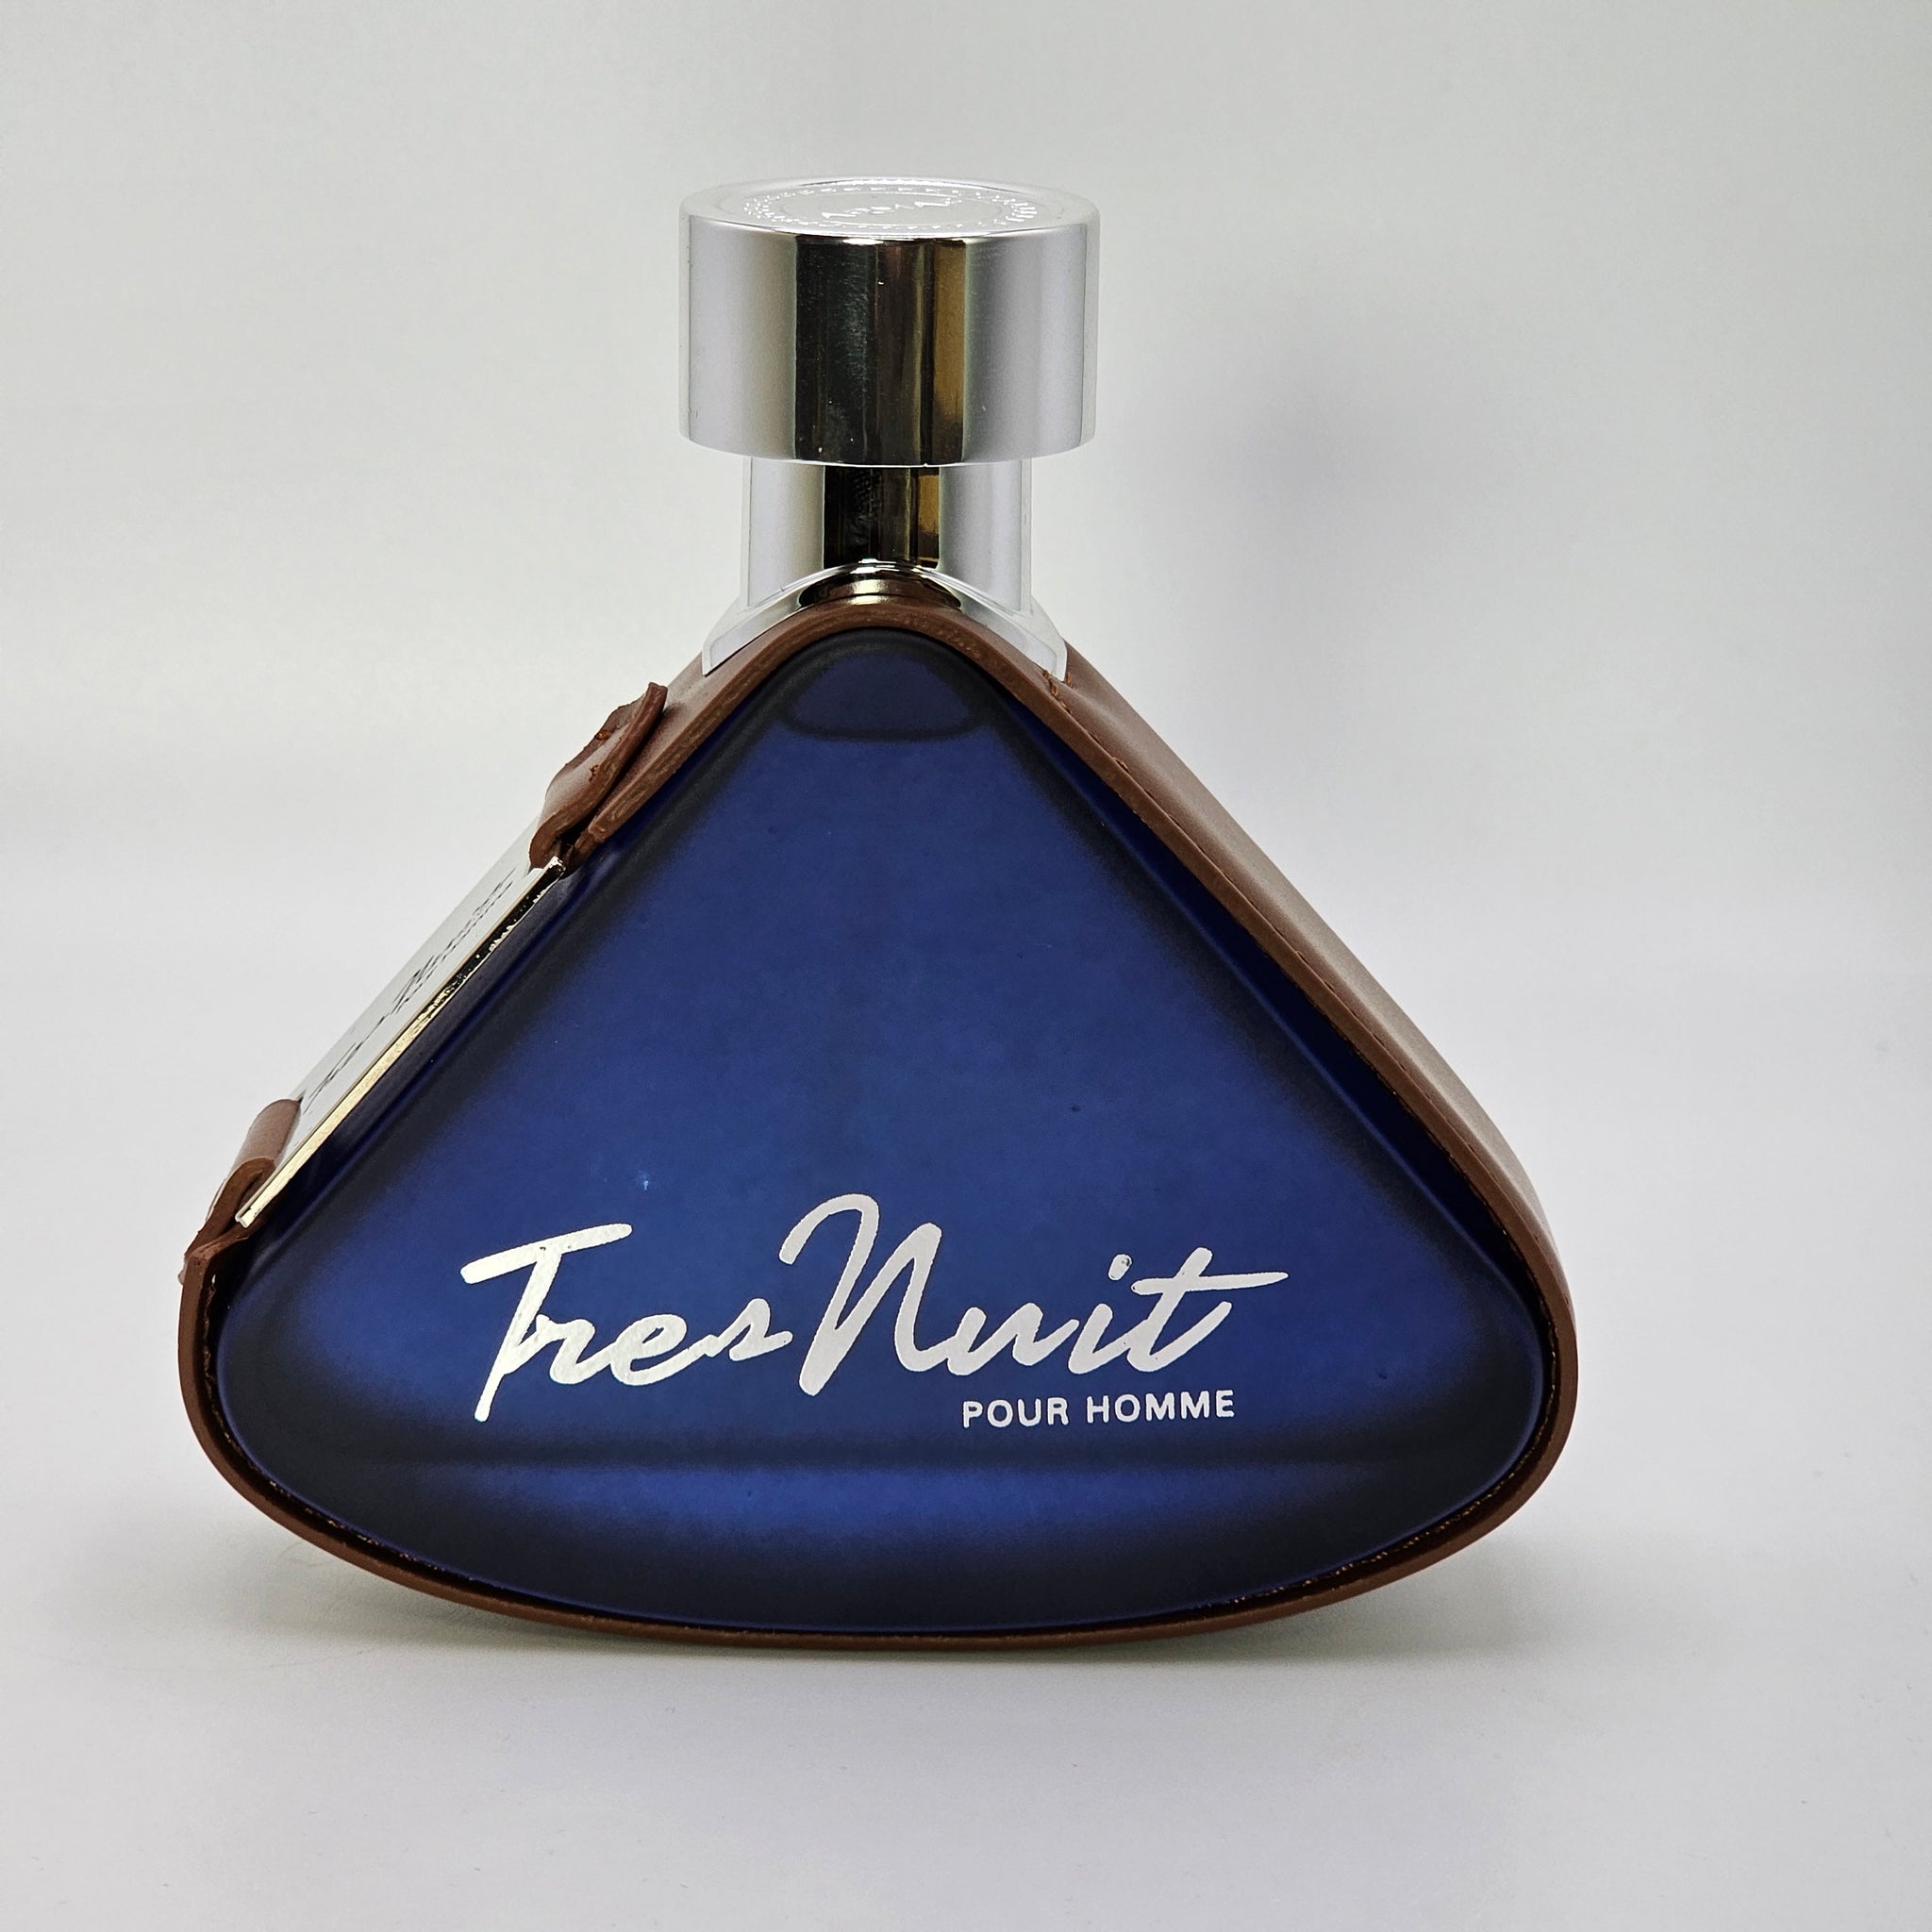 Tres Nuit Pour Homme By Armaf Eau De Parfum 3.4 Oz